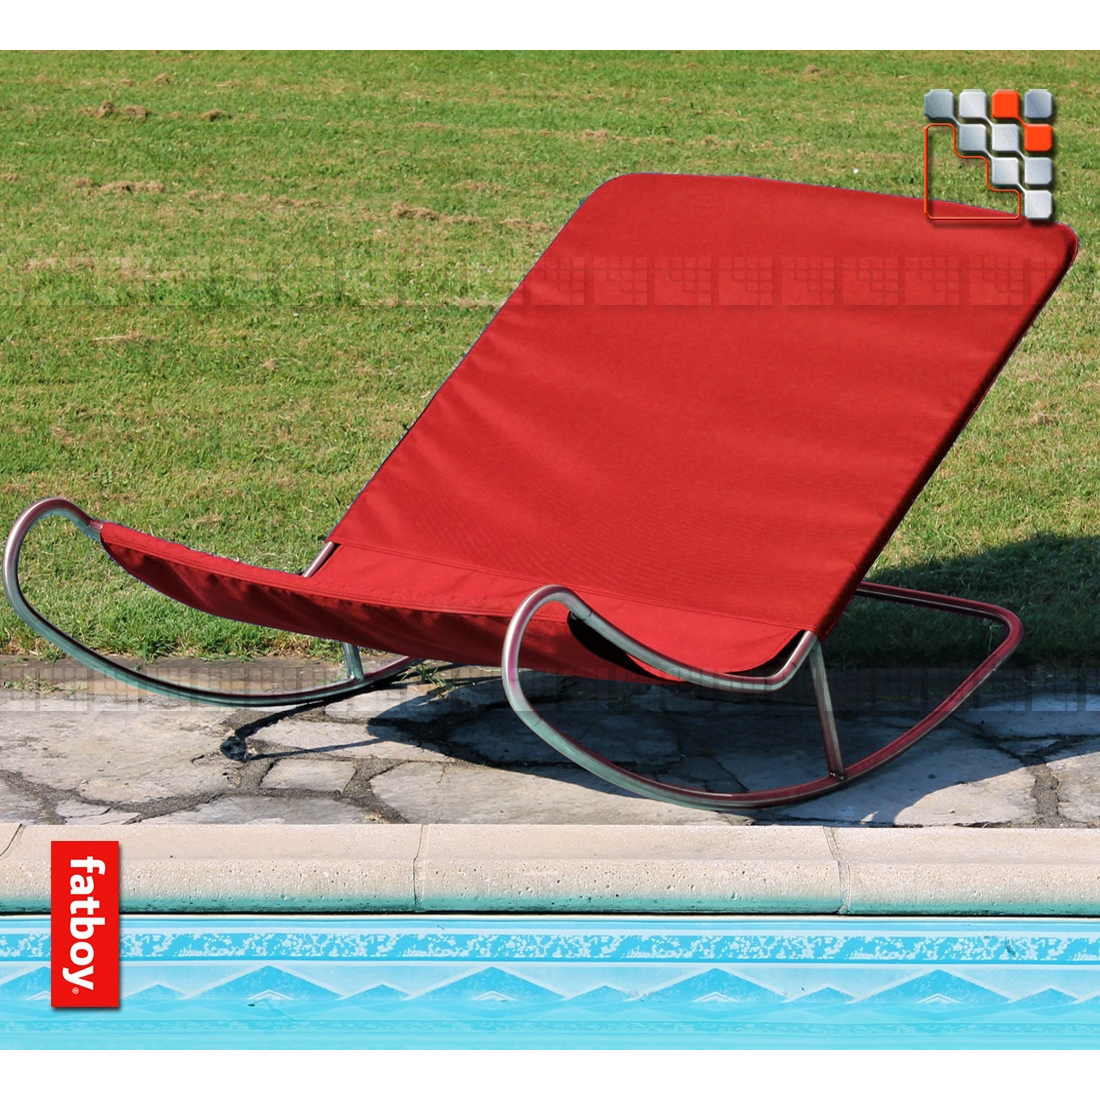 BeTransat Designxp® A17-VB103199 A la Plancha® Shade Sail - Outdoor Furnitures